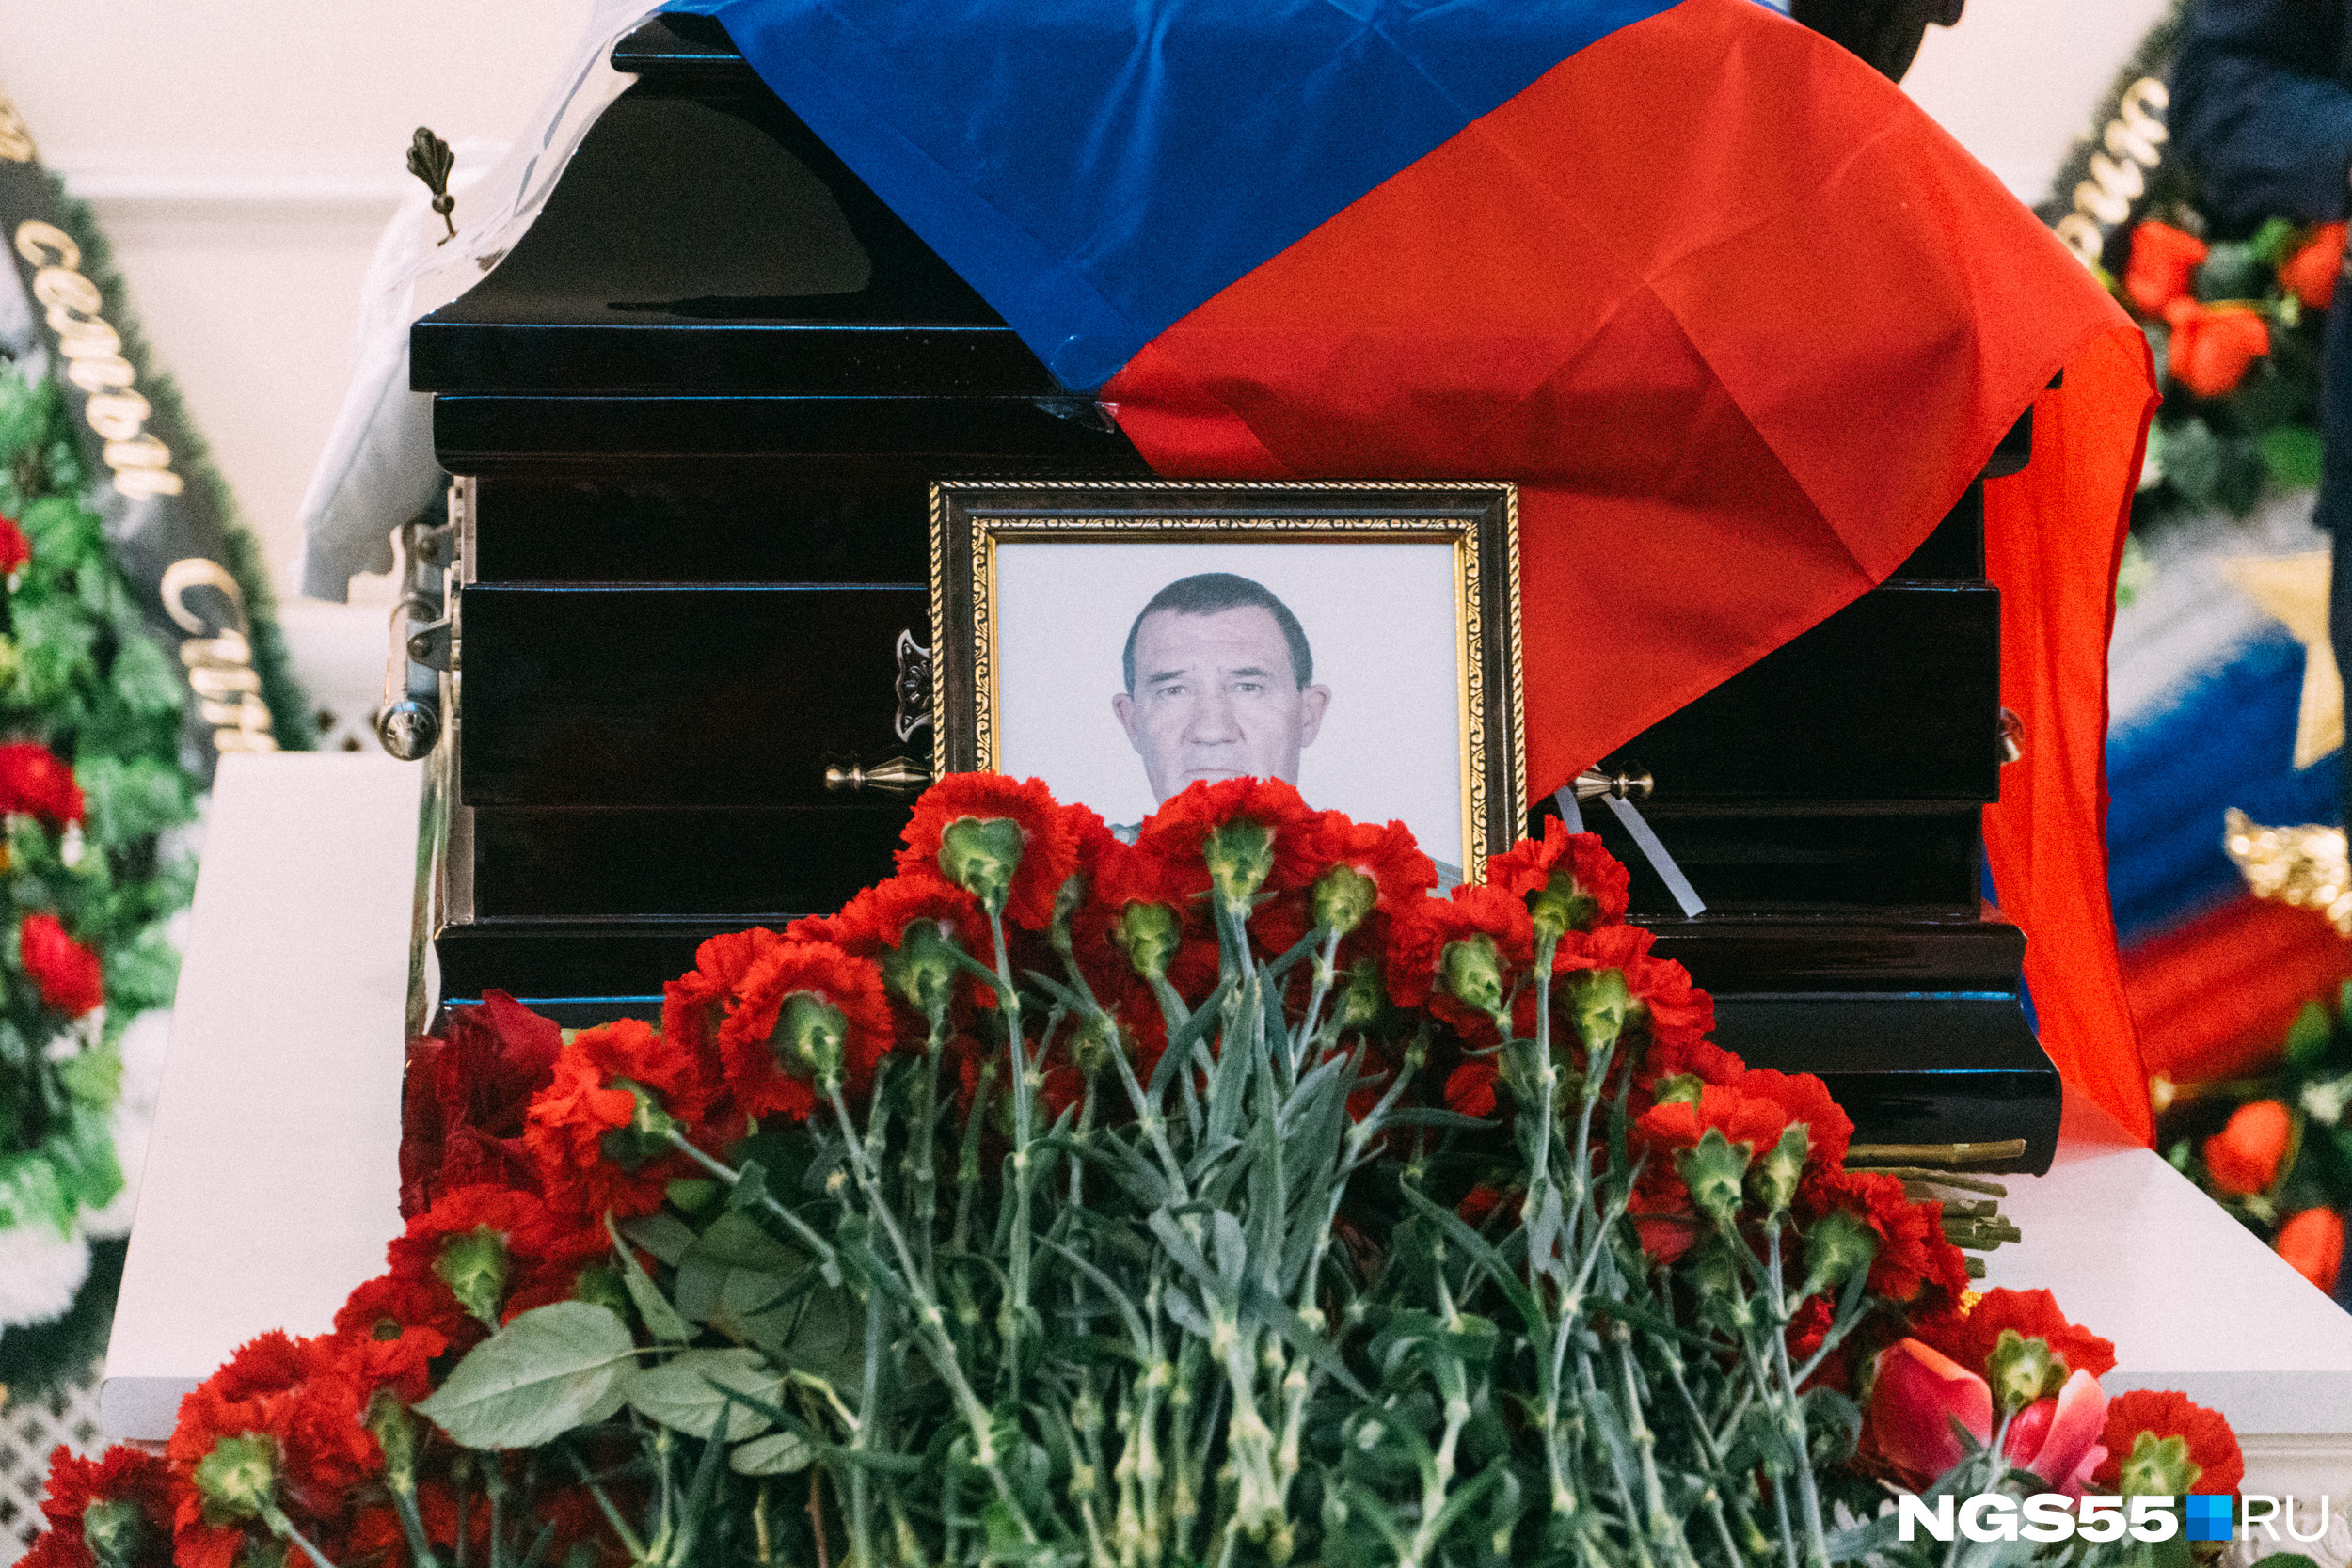 Списки погибших омичей на украине. В Омске похоронили погибших на Украине.